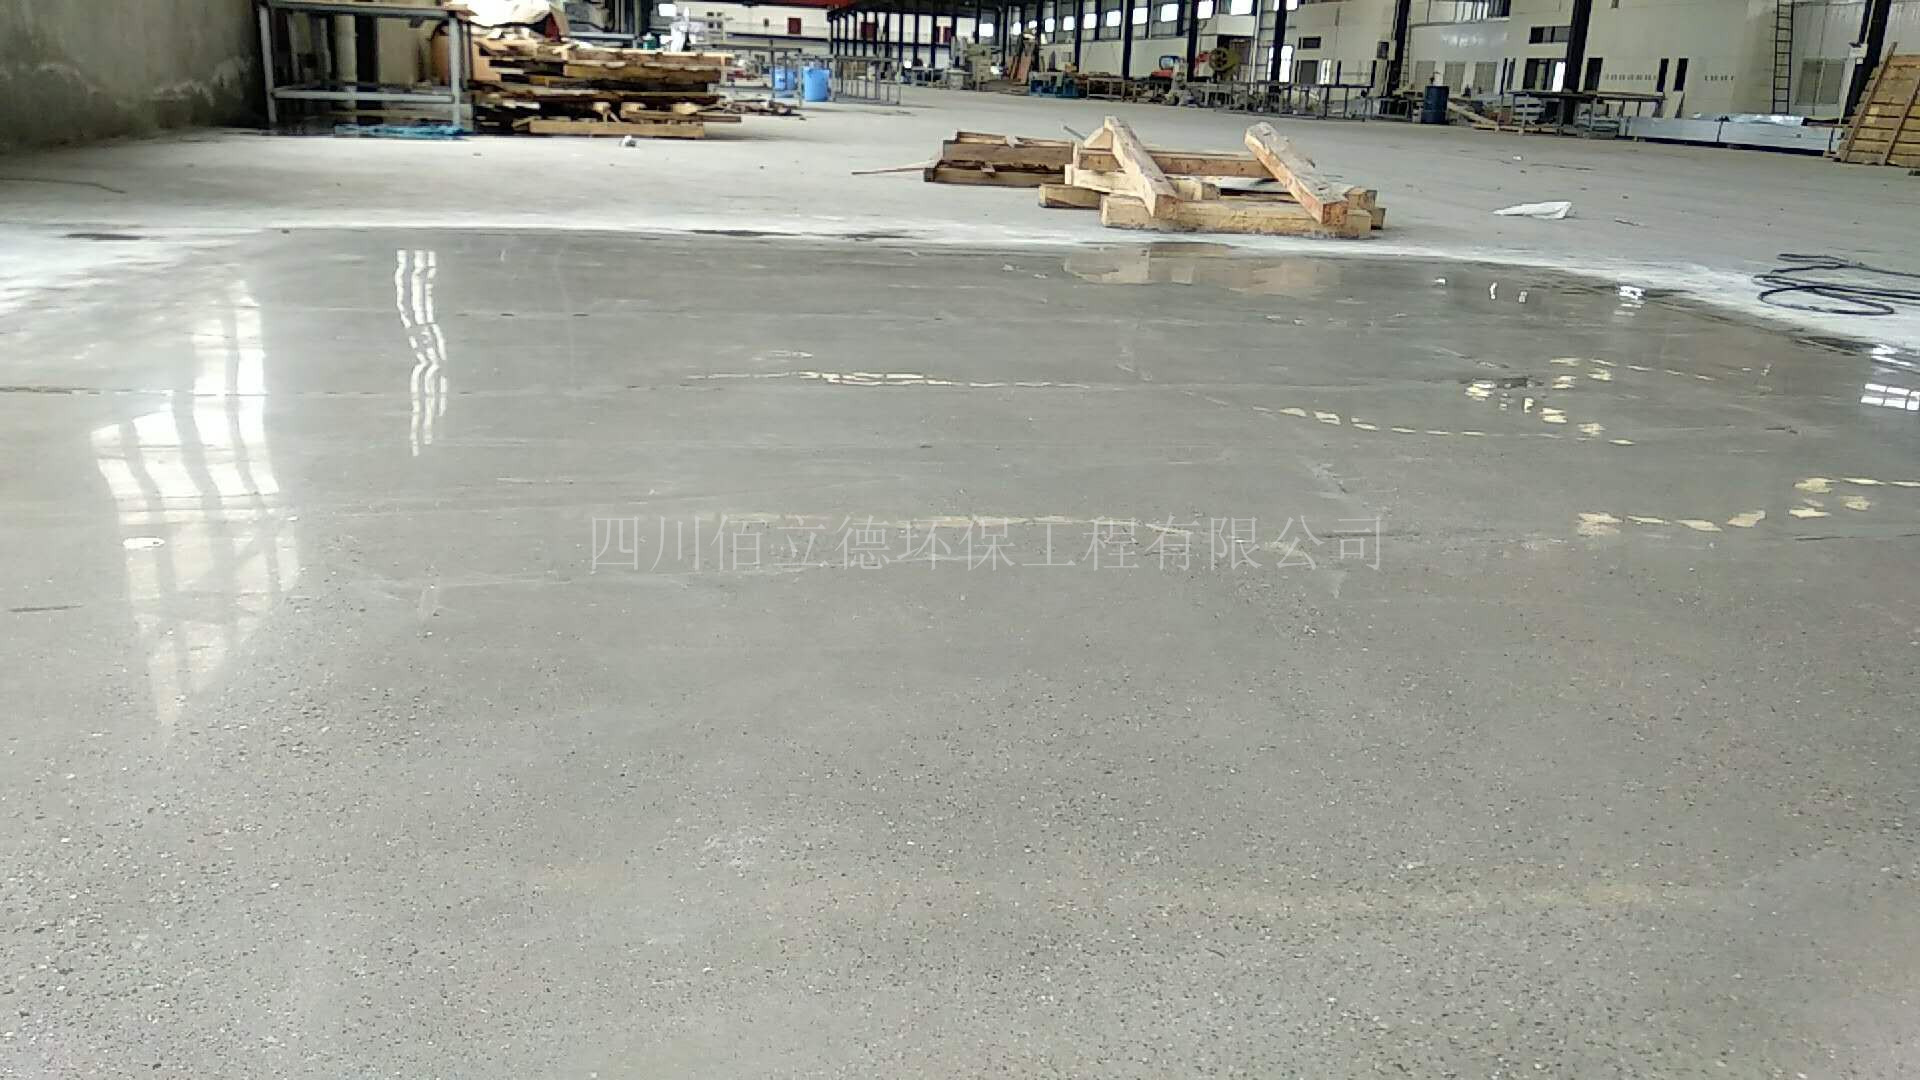 供应如何提高地坪耐磨性 专业提高水泥基耐磨 延长地坪使用寿命 成都提高混凝土耐磨公司图片